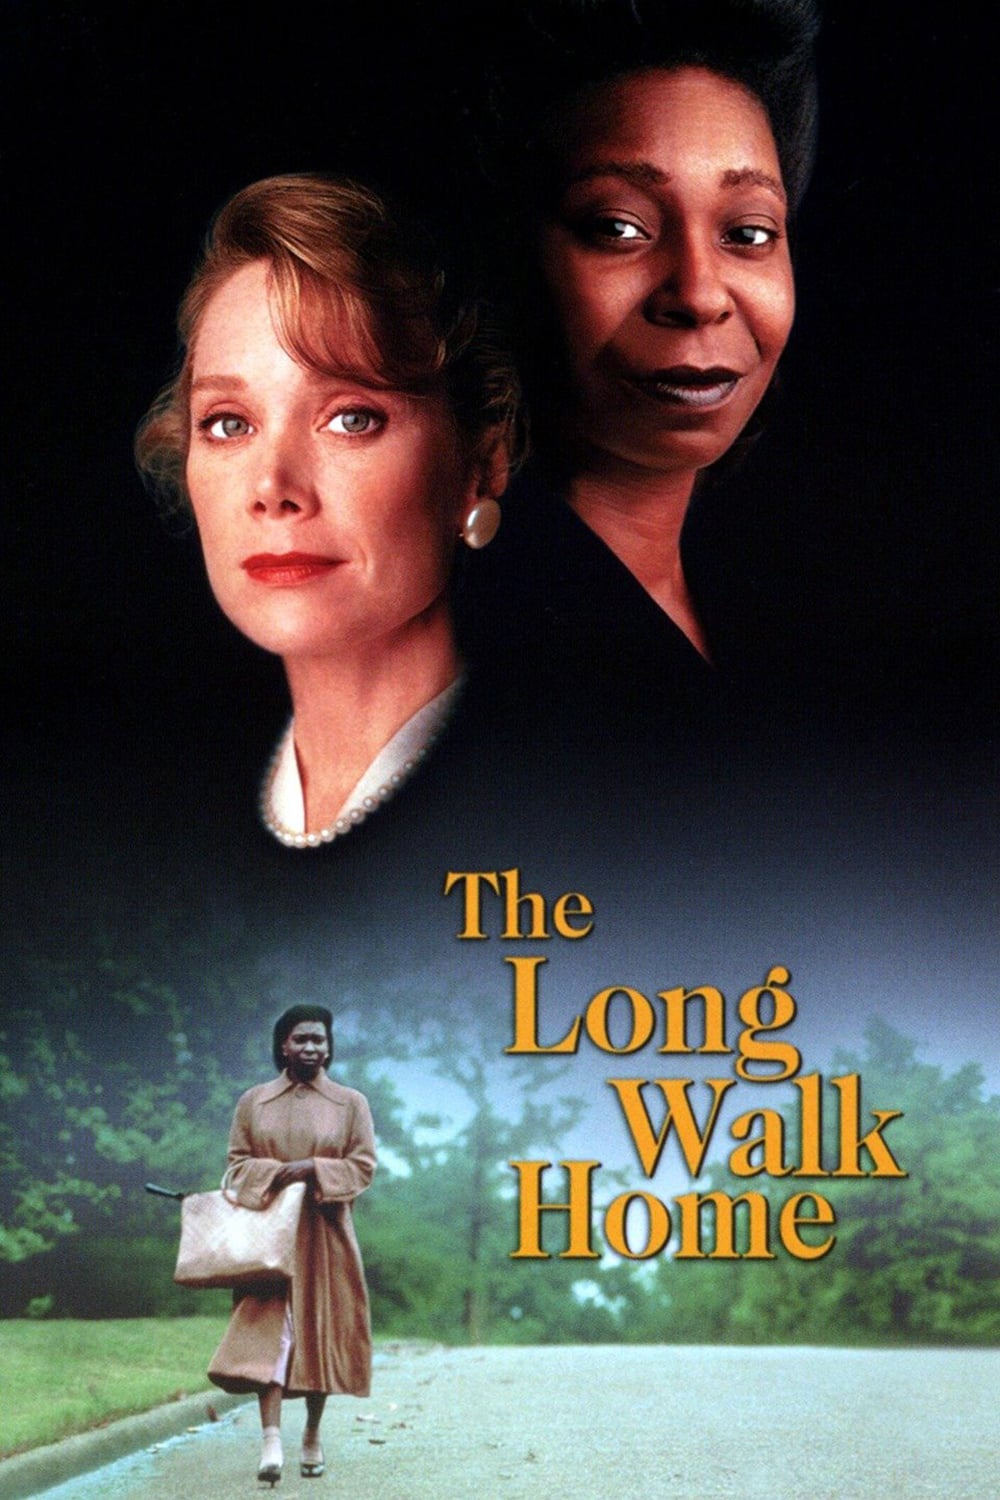 Plakat von "Der lange Weg"